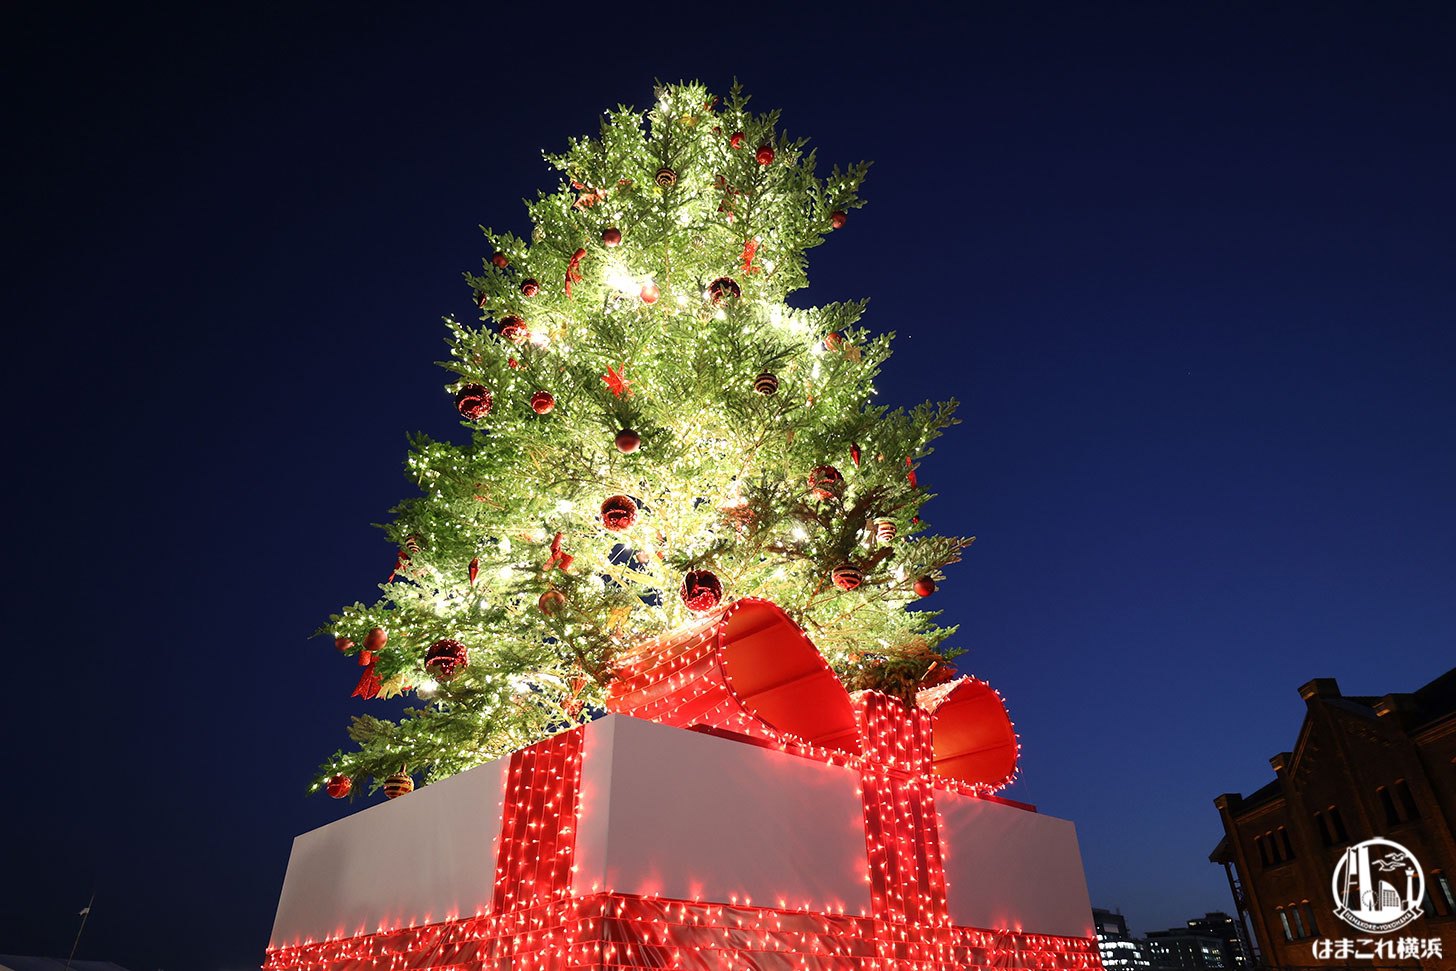 クリスマスマーケット ライトアップしたクリスマスツリー